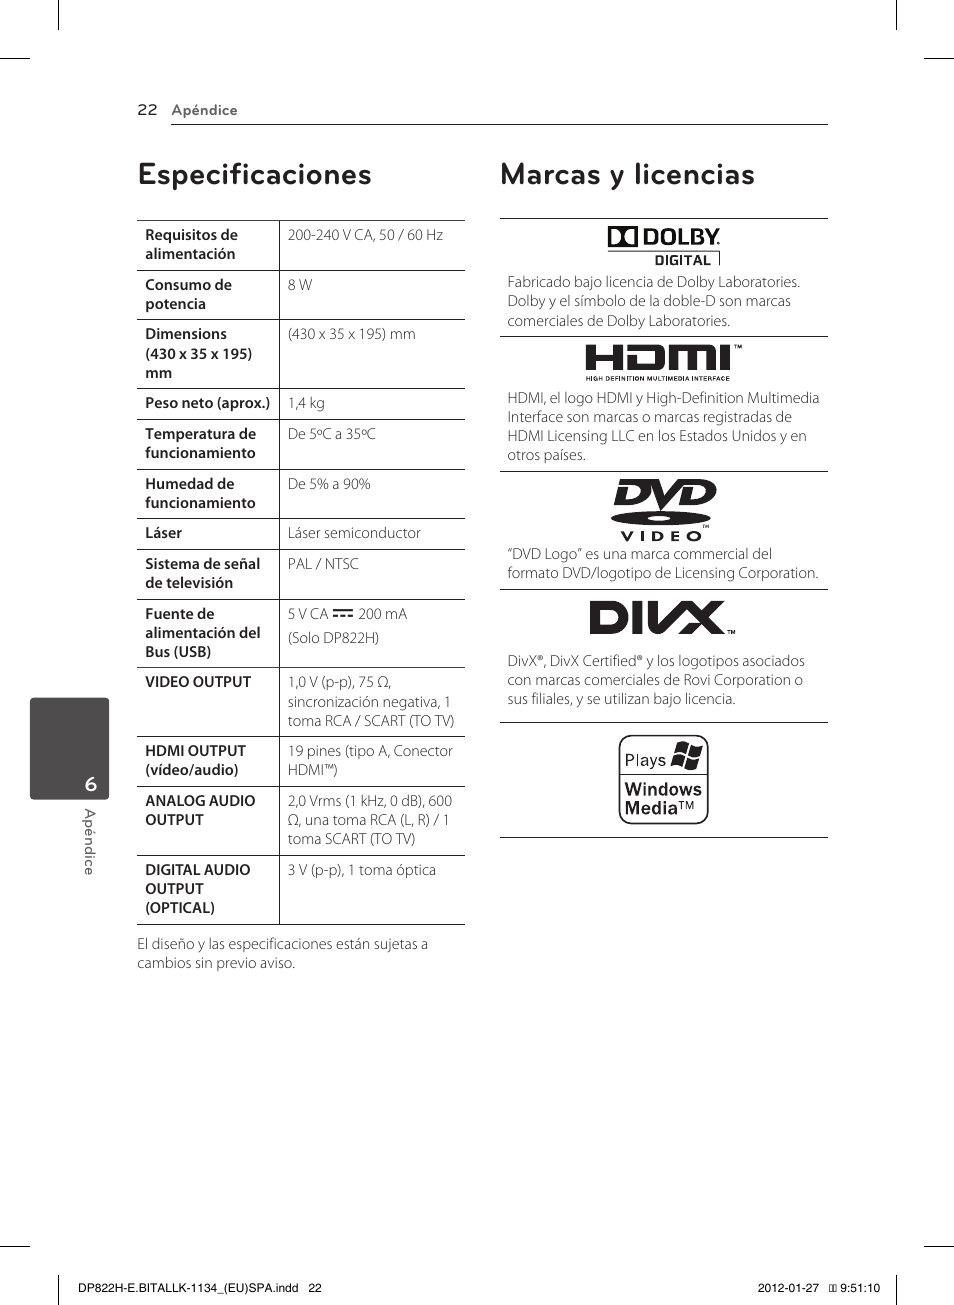 Especificaciones, Marcas y licencias | LG DP822H Manual del usuario | Página 22 / 24